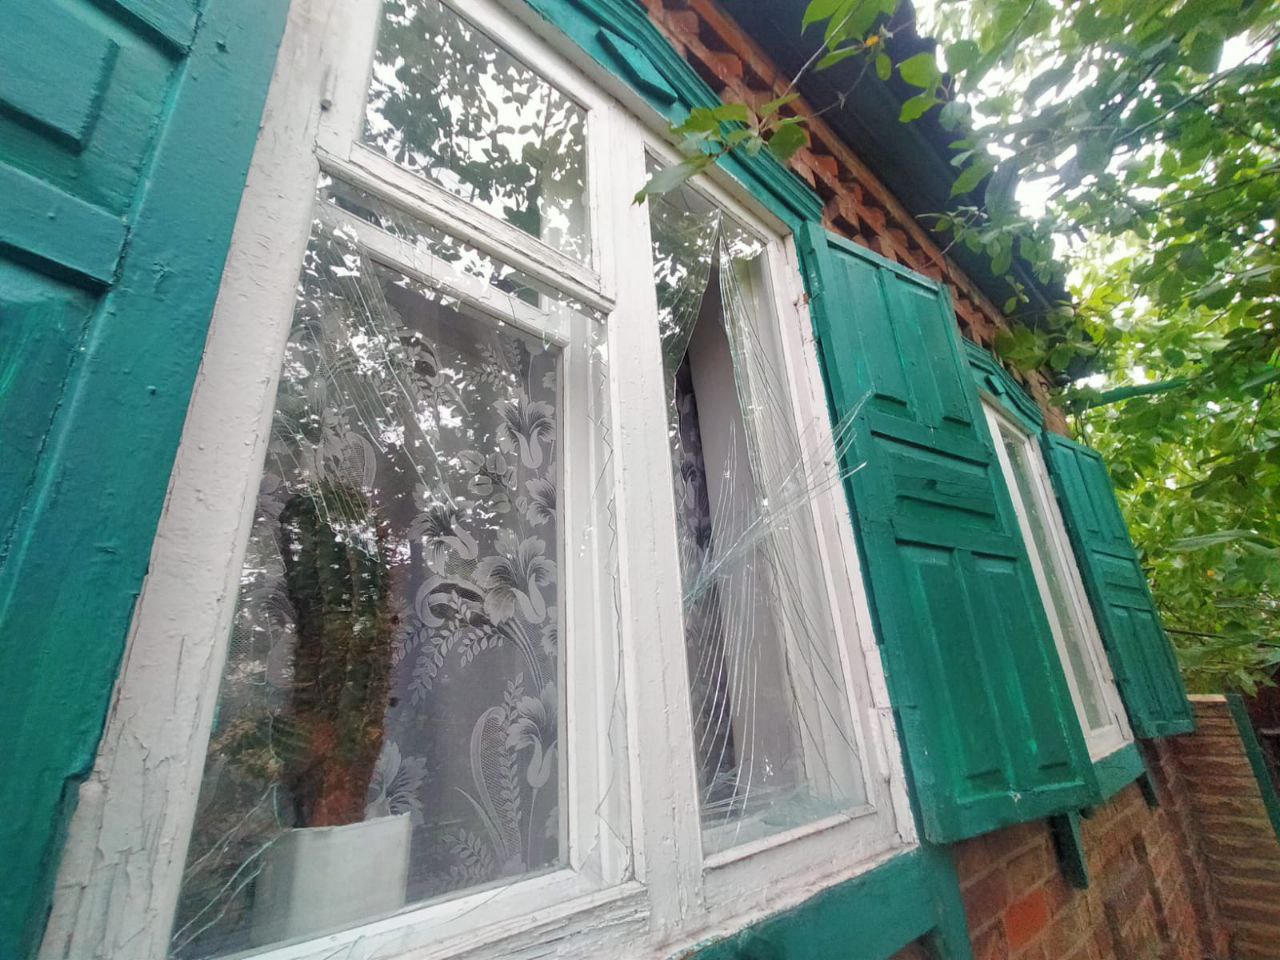 зруйнований приватний будинок в Донецькій області